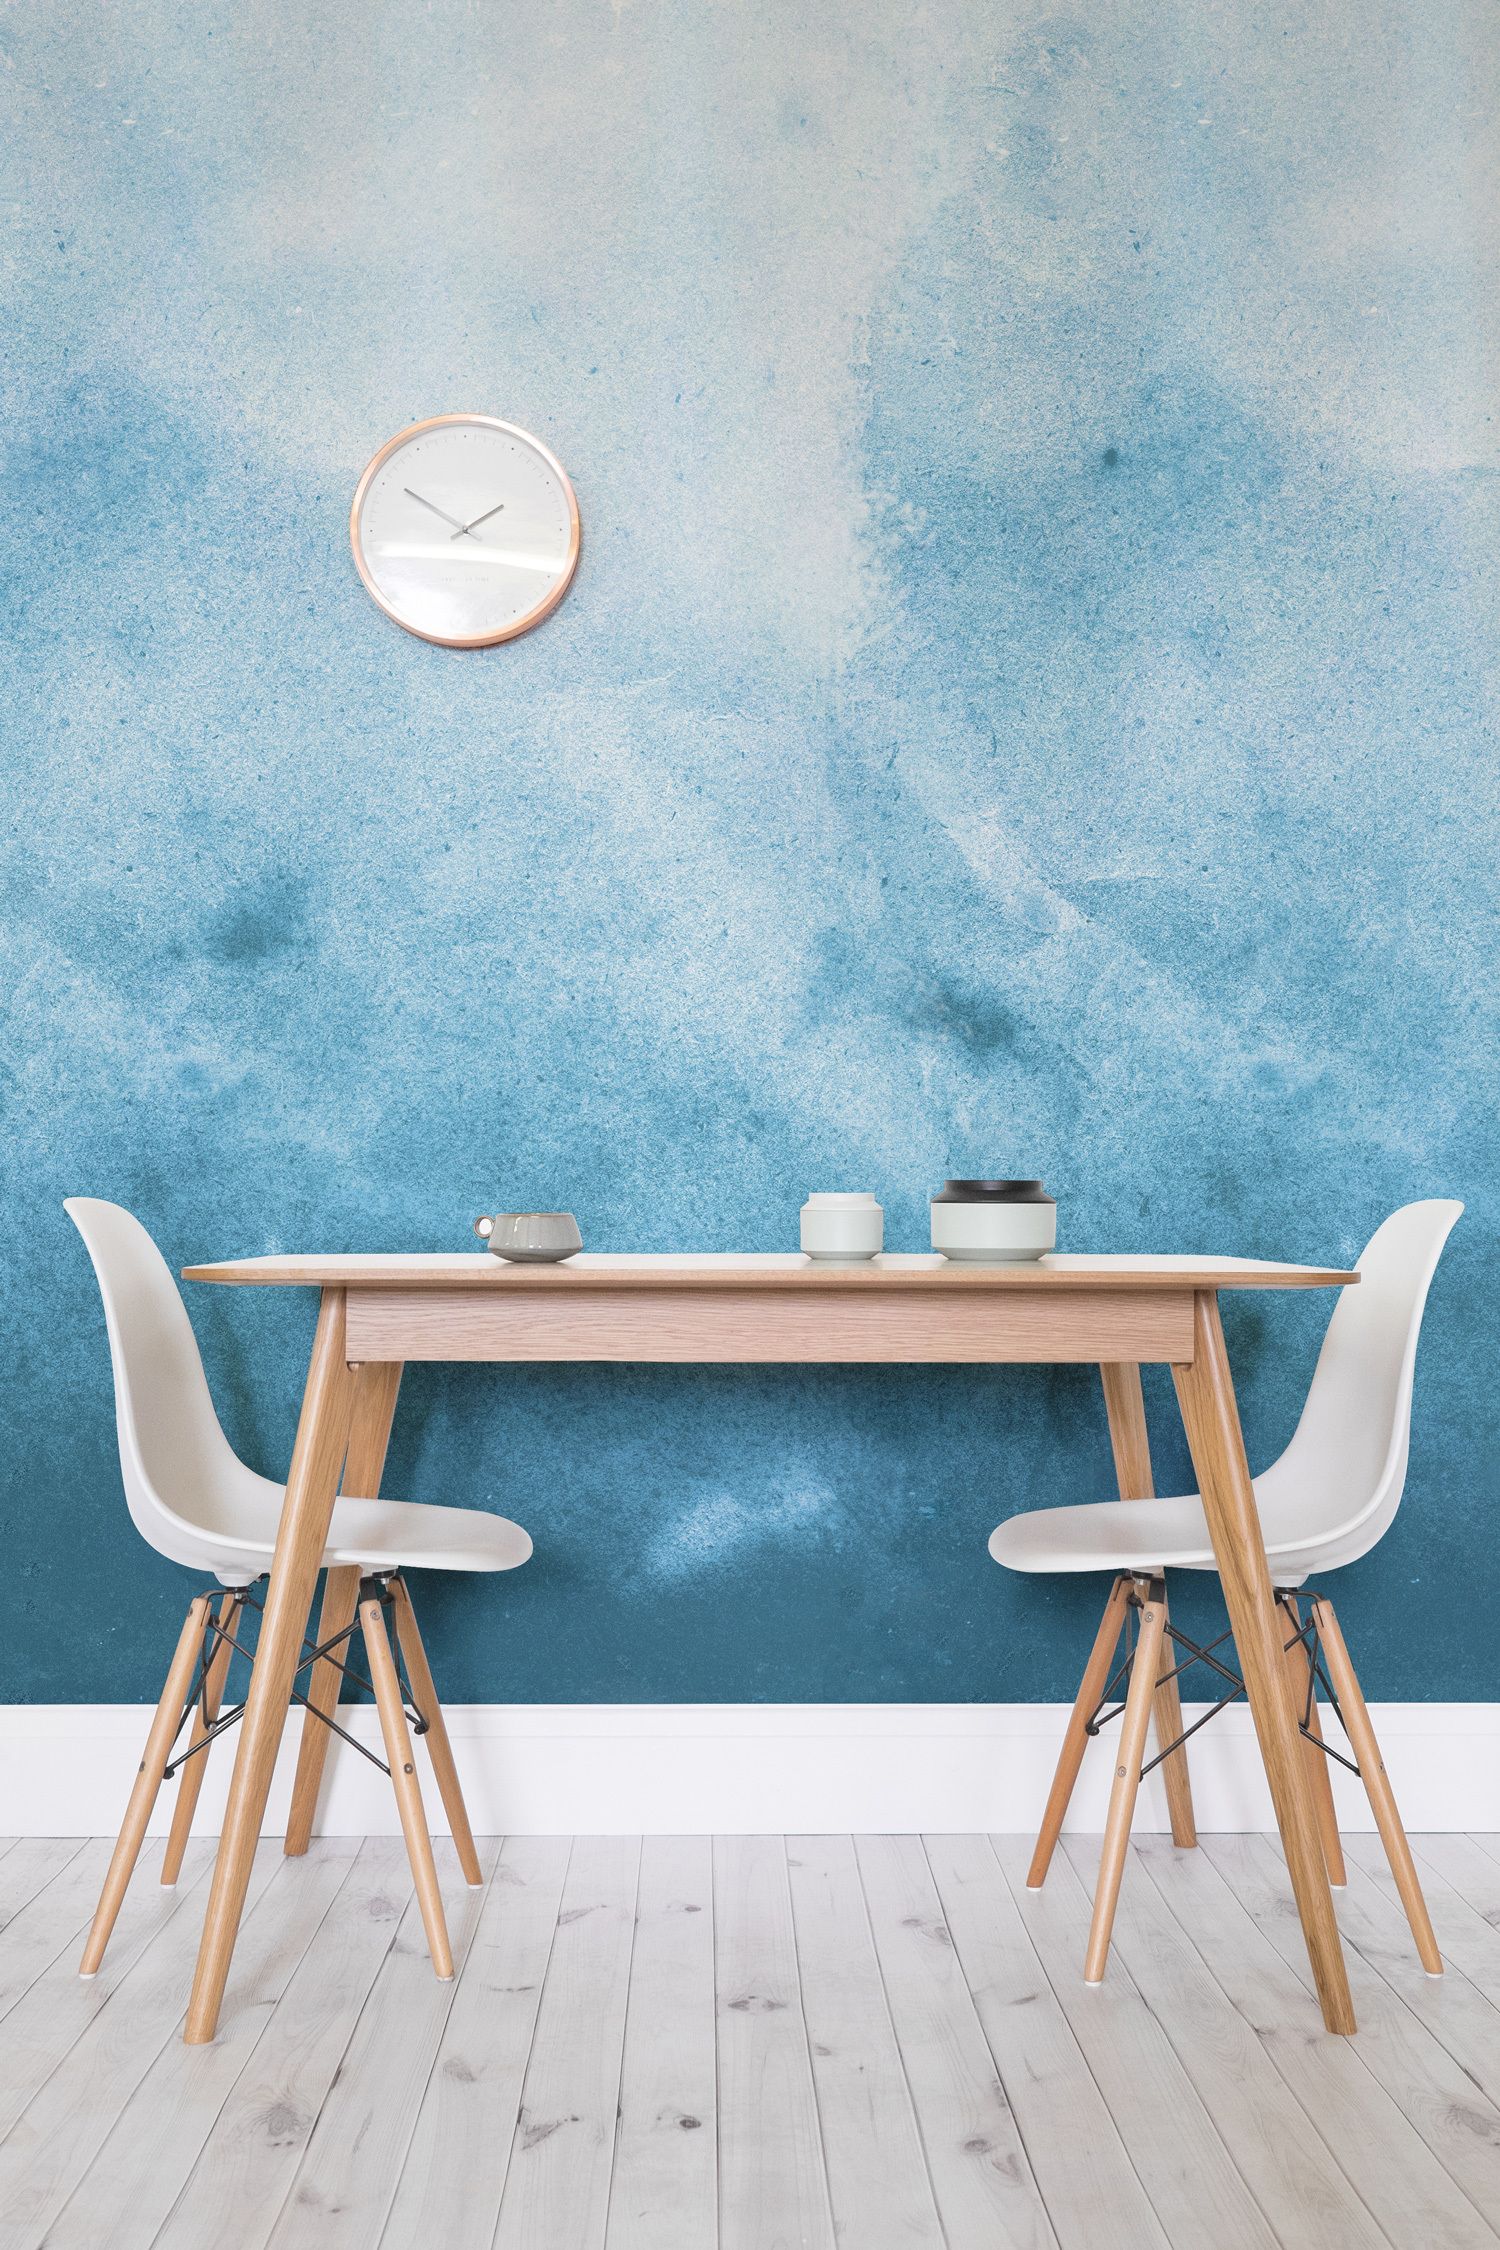 壁の水彩画の壁紙,家具,青い,テーブル,壁,ルーム